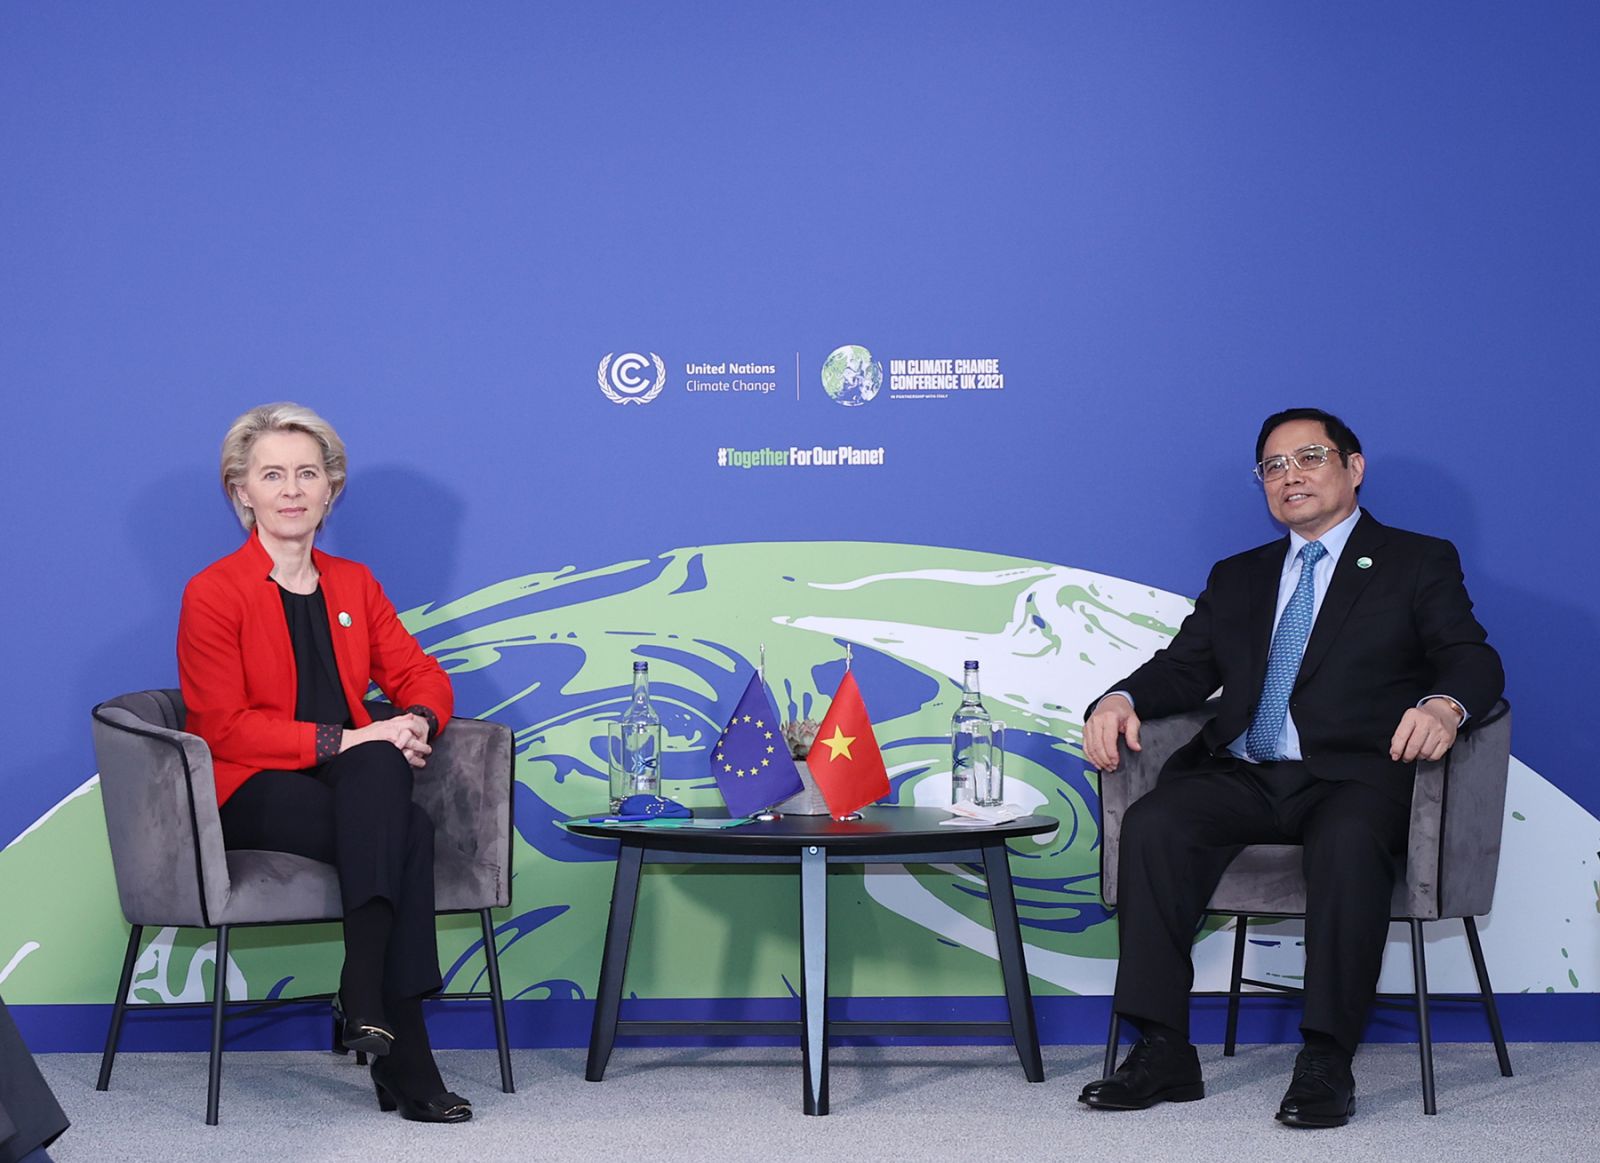 Chùm ảnh: Thủ tướng Phạm Minh Chính dự Khai mạc Hội nghị COP26